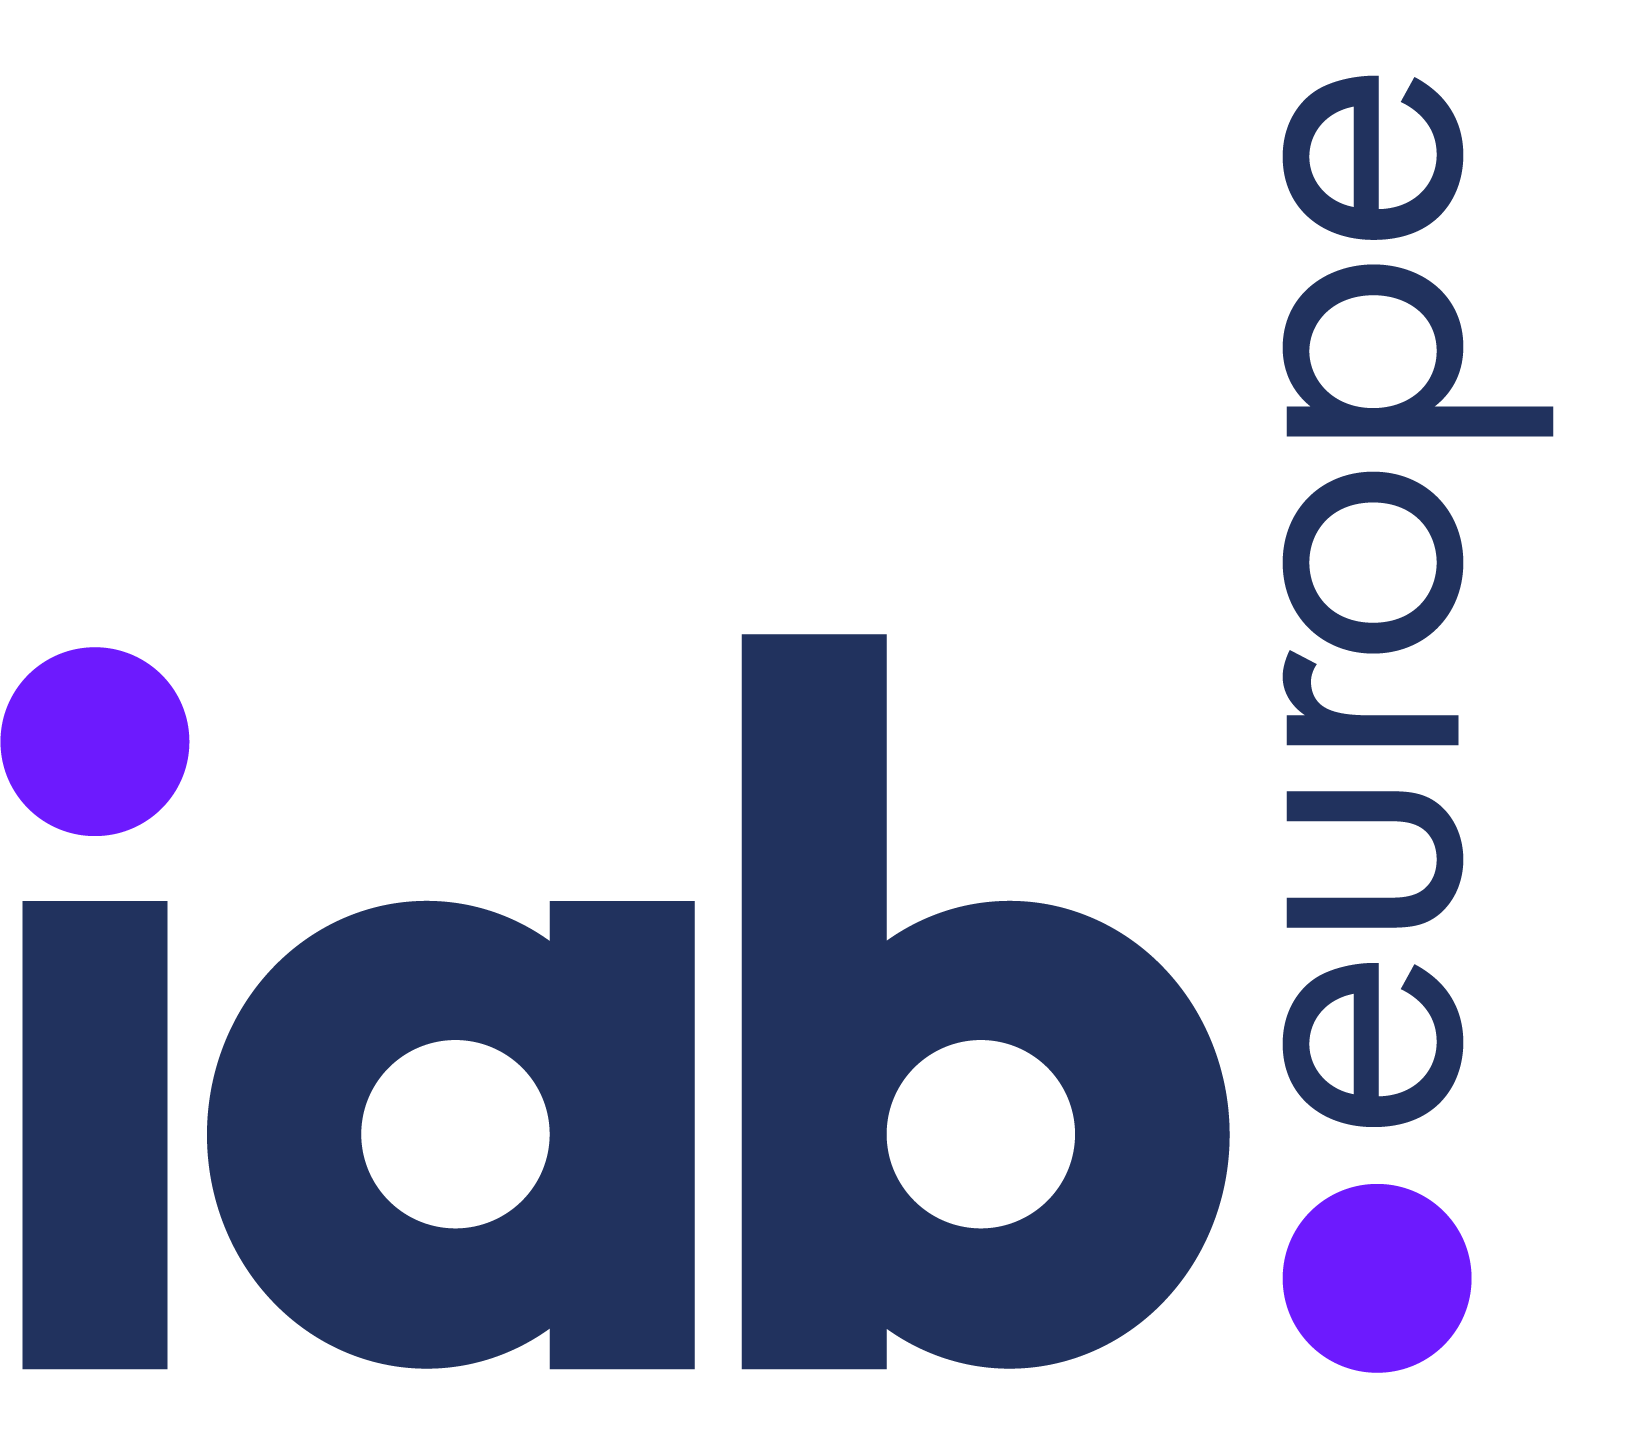 iab-logo.png (21 KB)